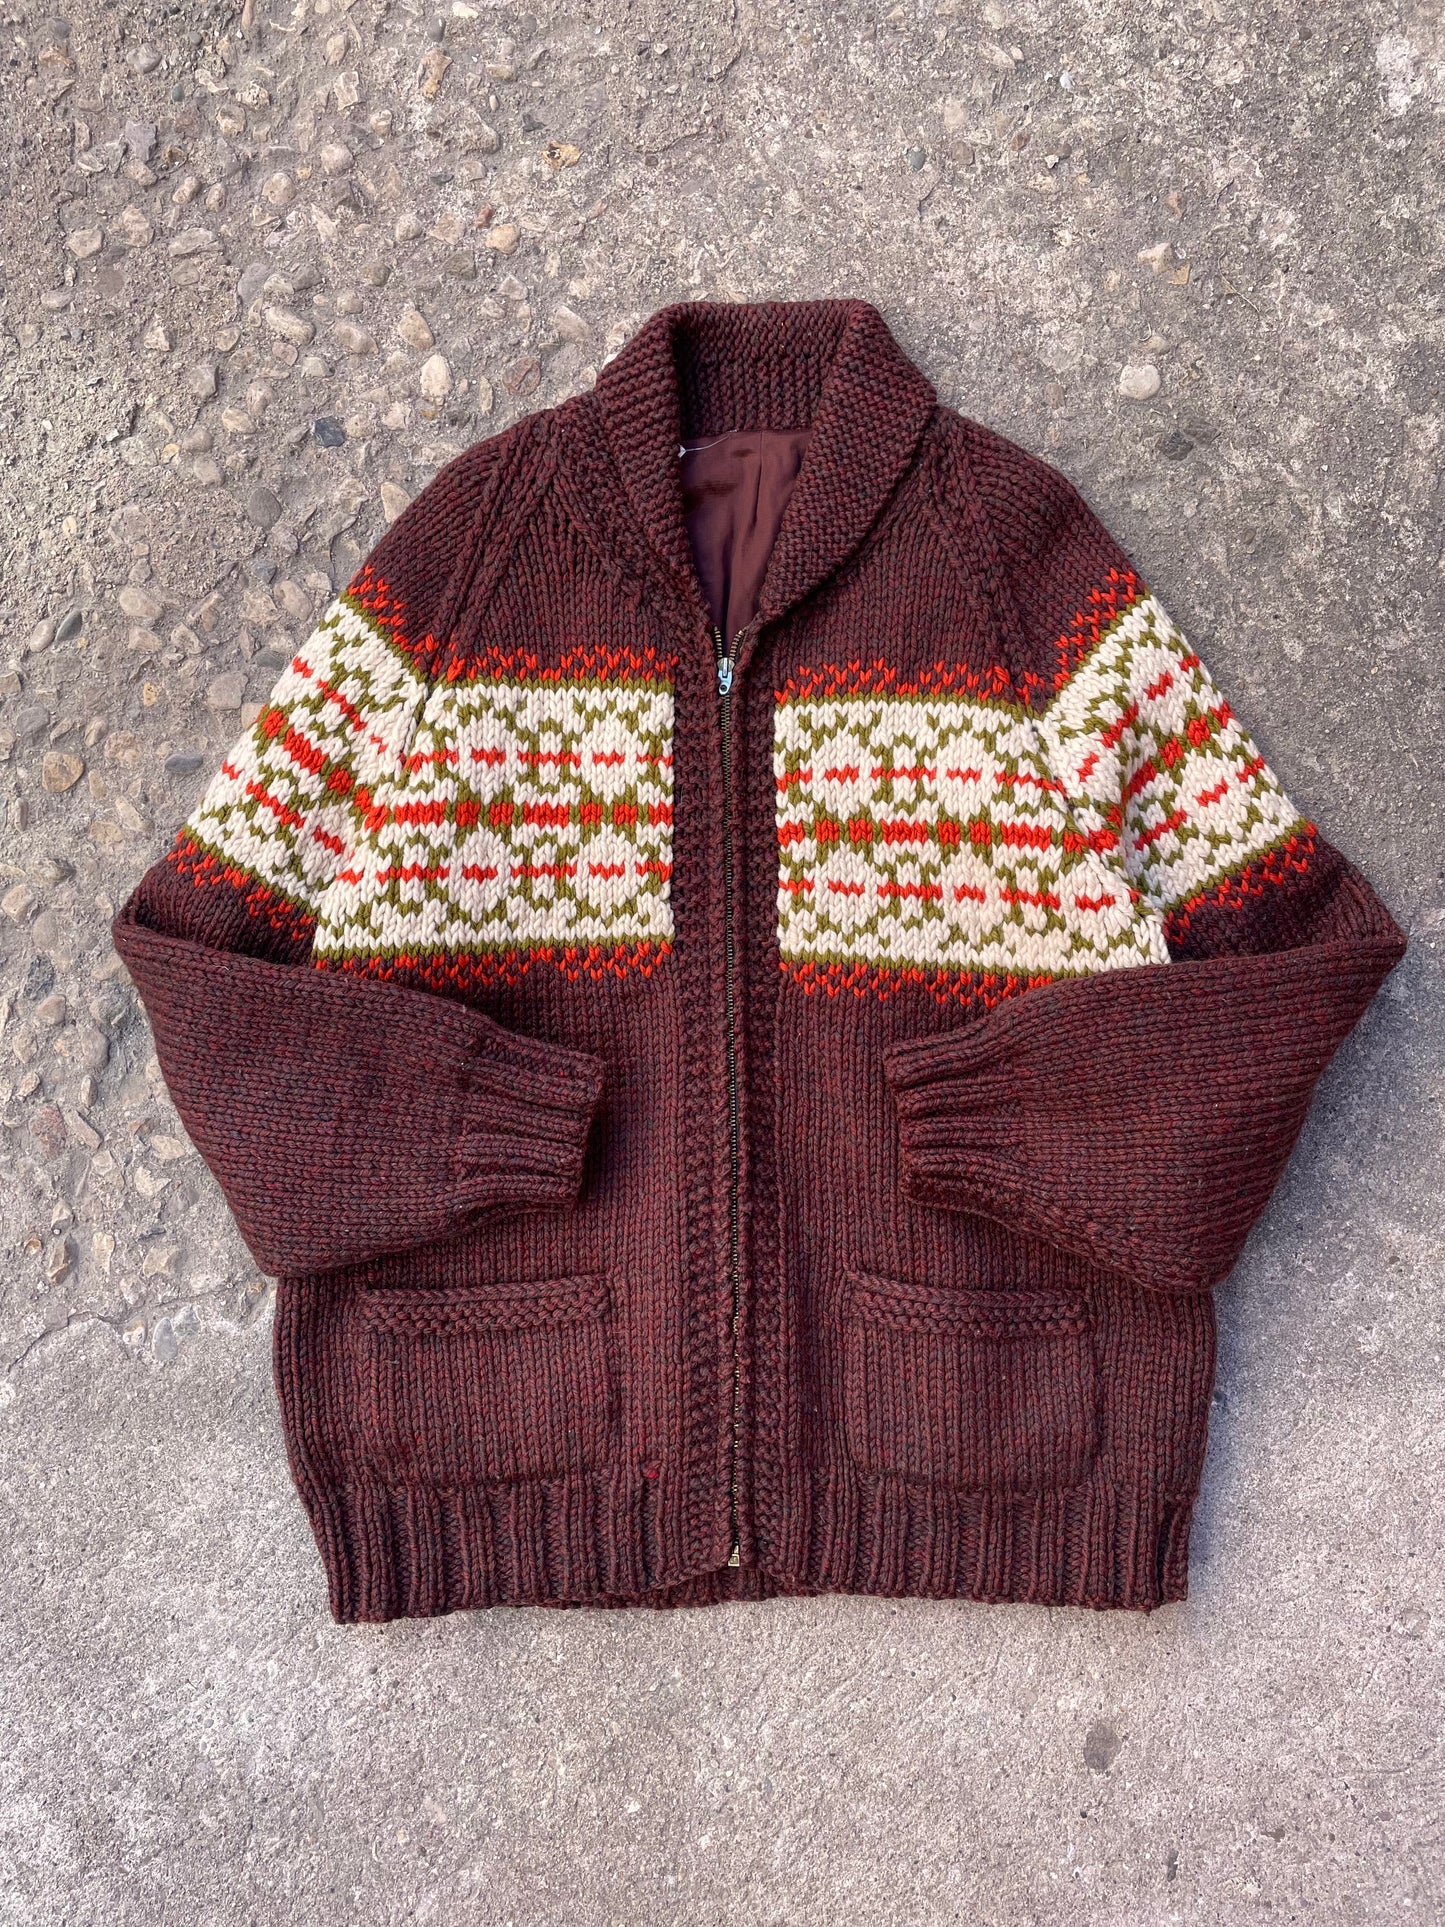 1960's Patterned Cowichan Knit Sweater - L